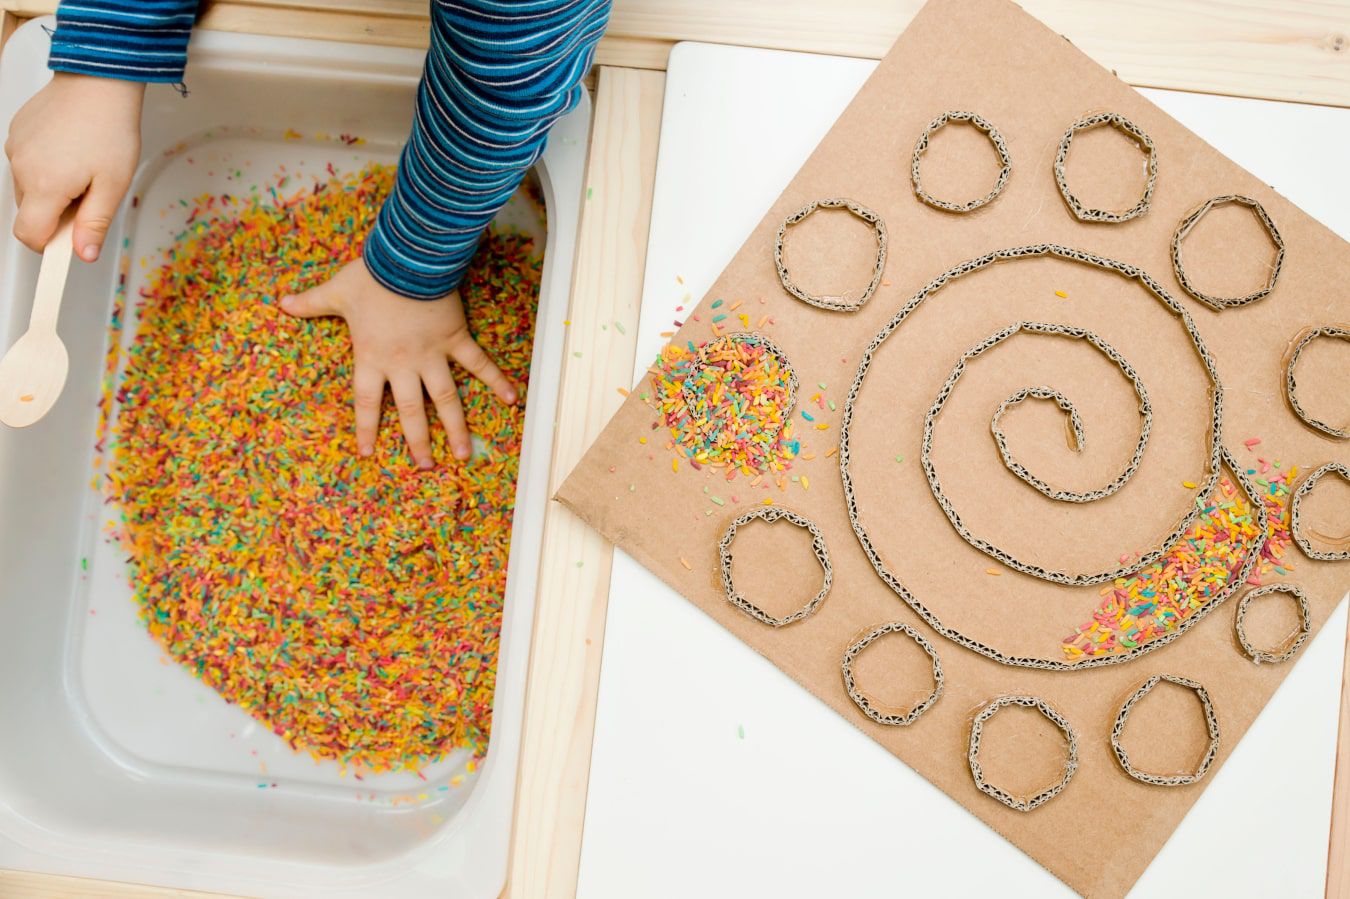 Les mains de bébé reconnaissent une nouvelle texture - des bonbons colorés et des vermicelles, à côté il y a un labyrinthe en carton DIY